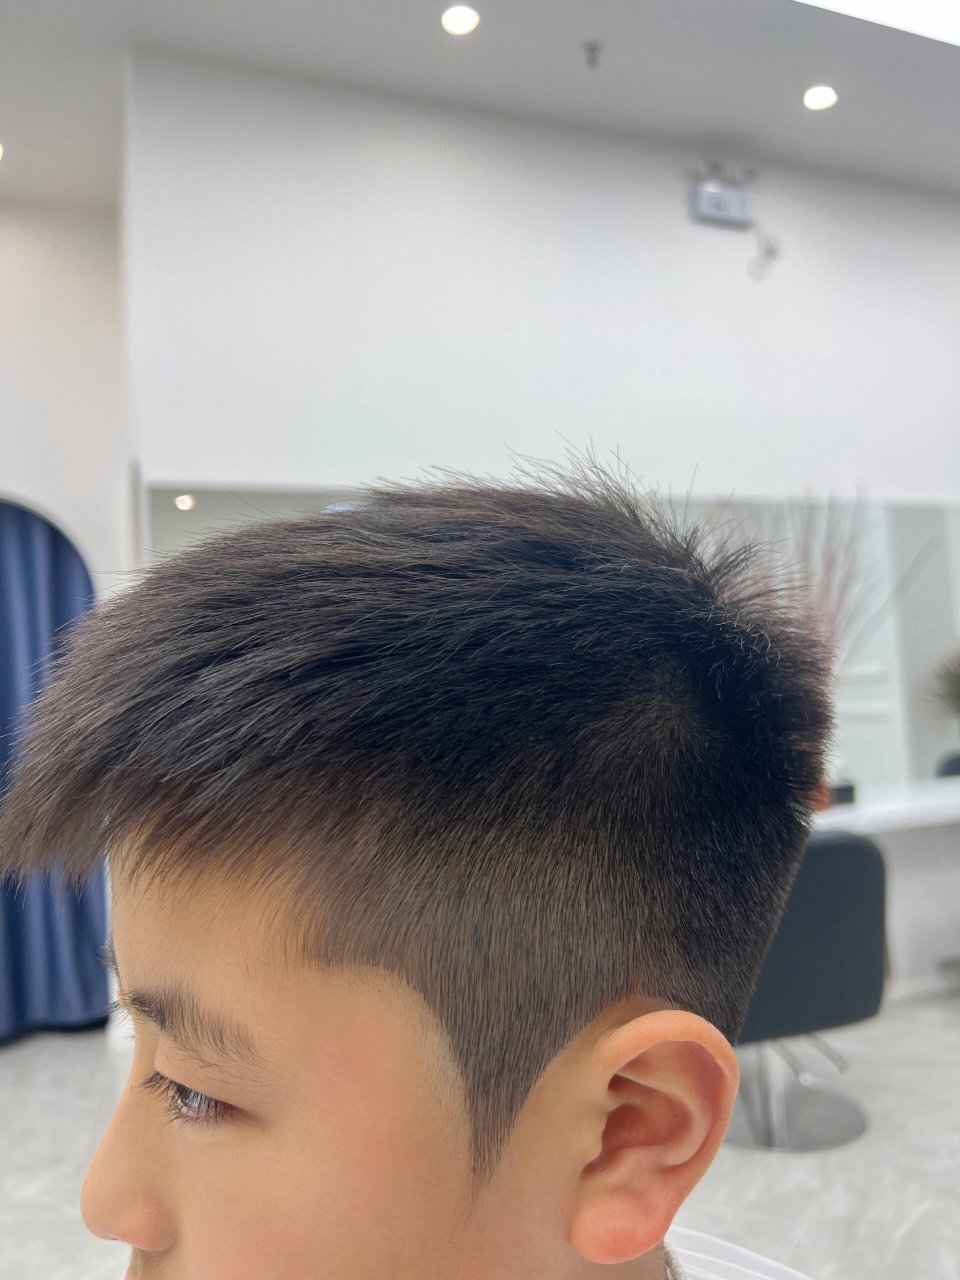 12岁小朋友自己设计的发型 他说剪的太帅了 十来岁的小朋友剪发都是很